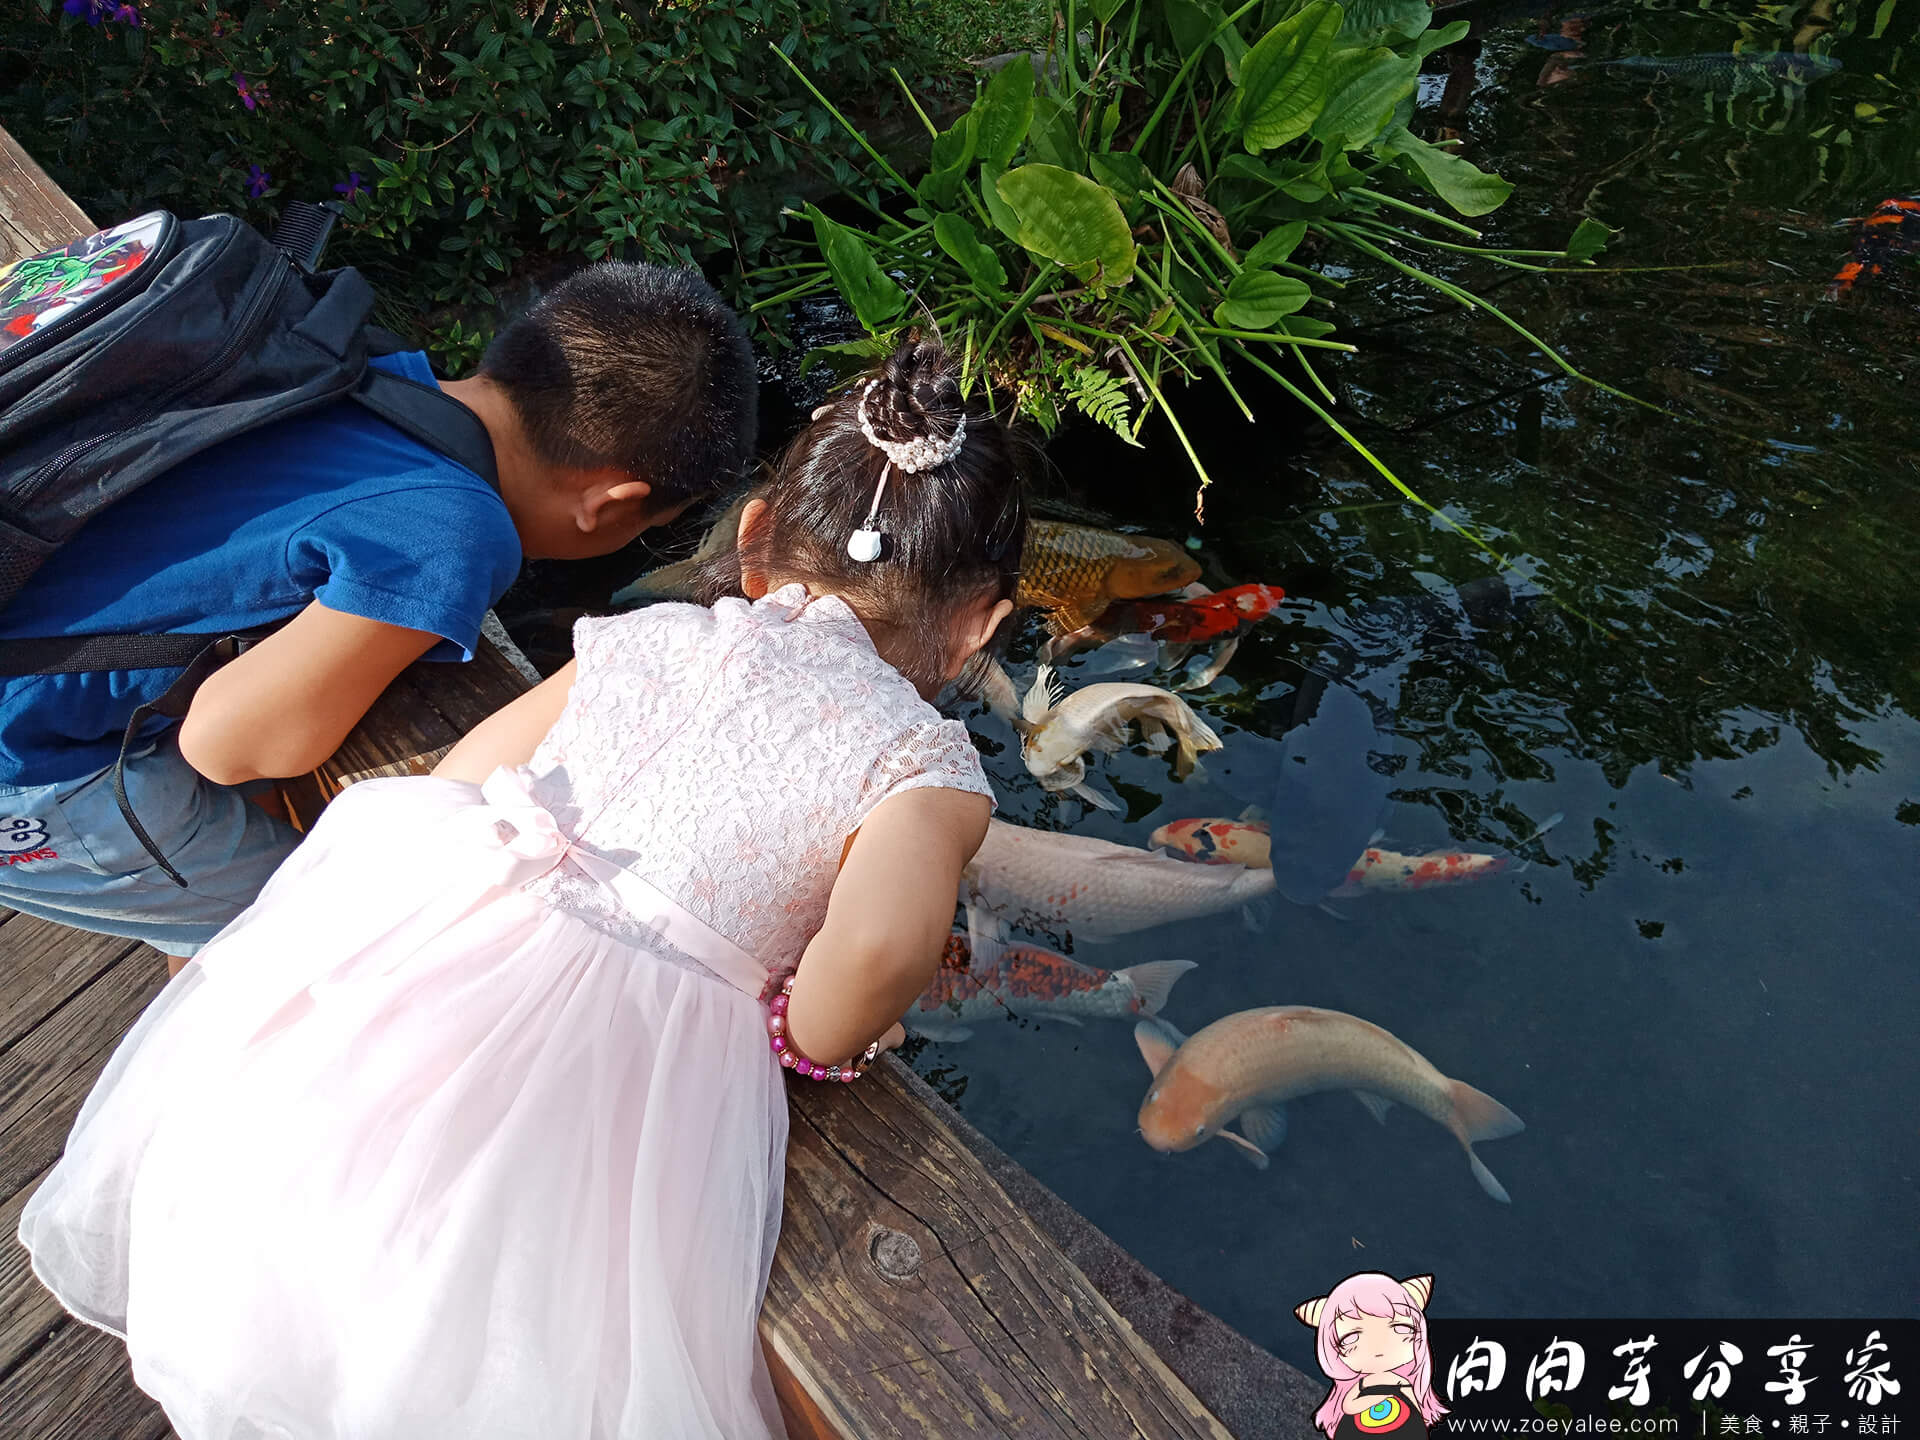 壹等賞景觀茶園餐廳錦鯉池吸引小孩目光，穿著中國風新式旗袍的小女孩與穿著休閒的小男孩一起觀看巨大錦鯉